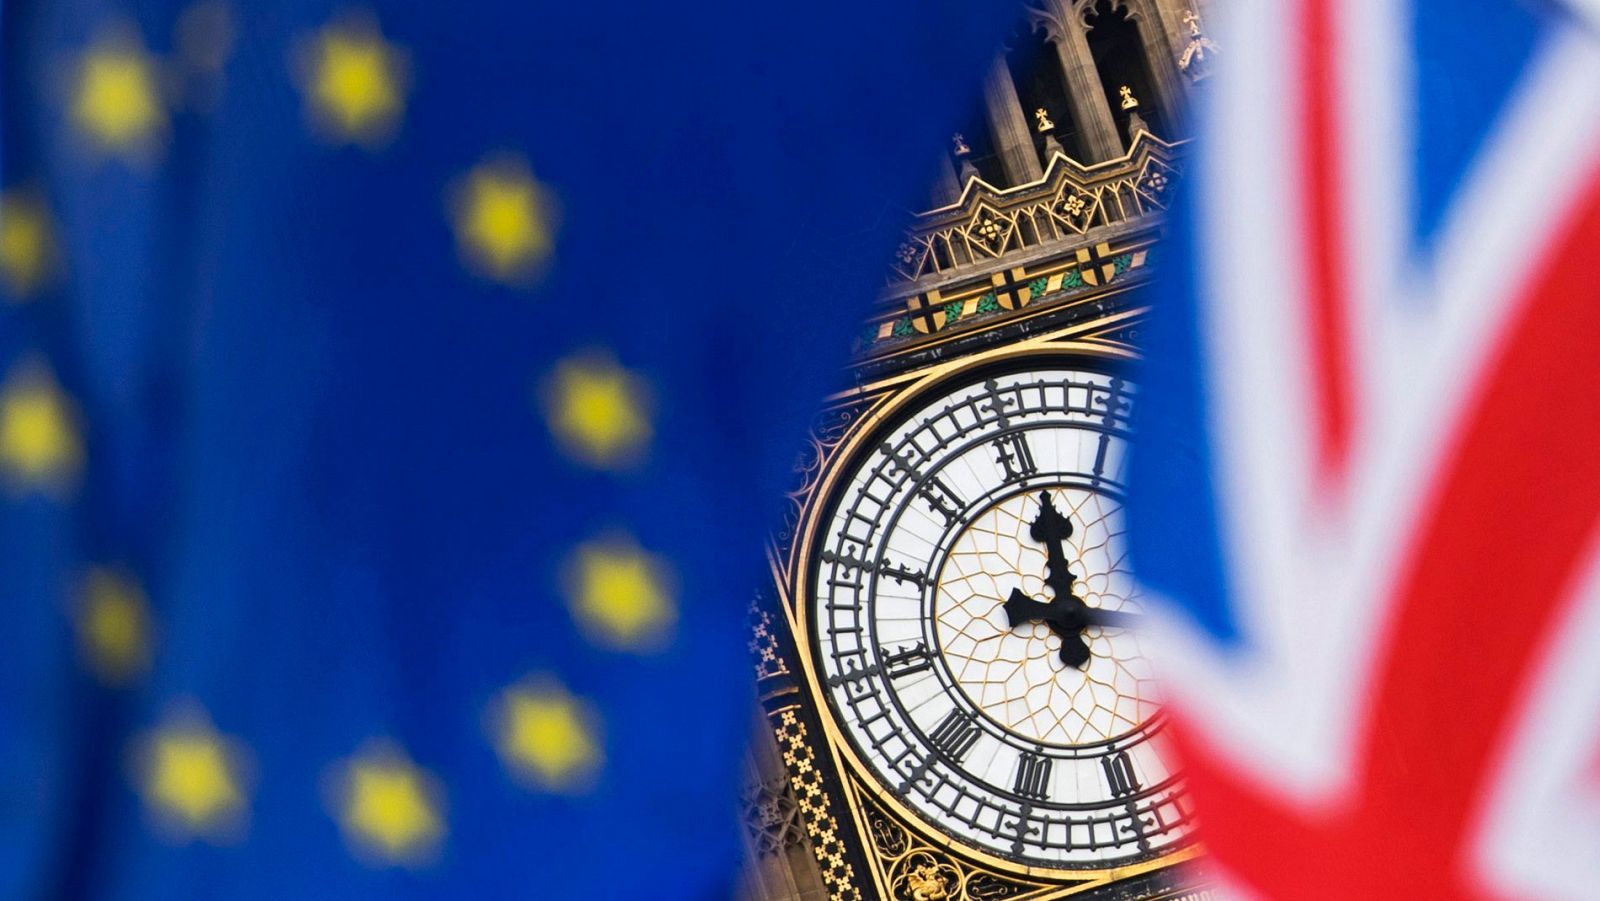 Vista del reloj del Big Ben entre una bandera del Reino Unido y una de la UniVista del reloj del Big Ben entre una bandera del Reino Unido y una de la Unión Europea en una imagen de archivo